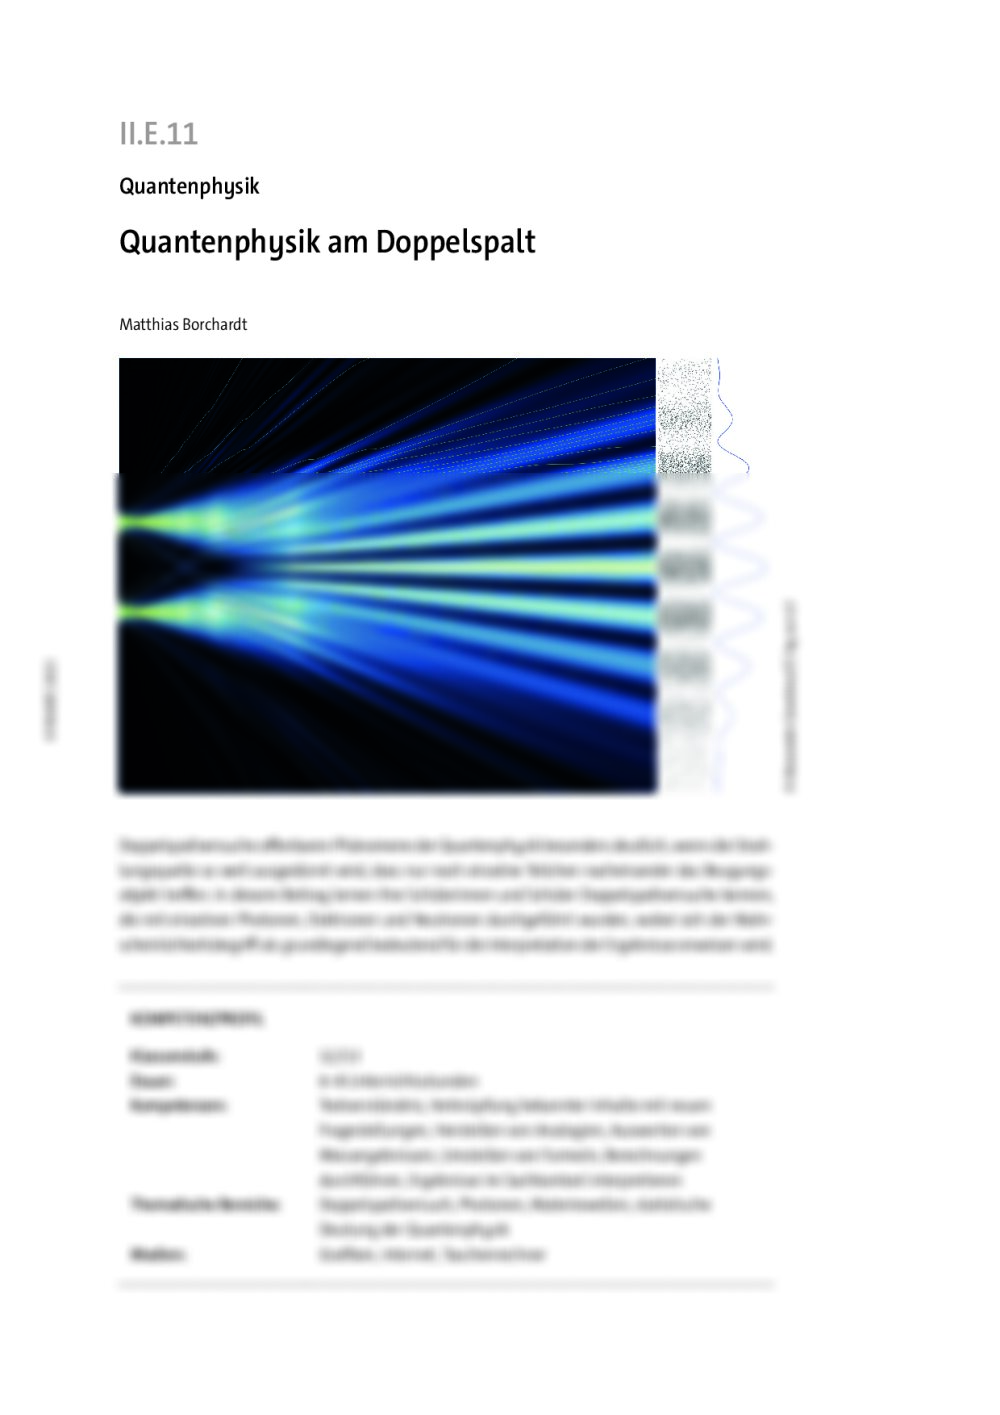 Quantenphysik am Doppelspalt - Seite 1